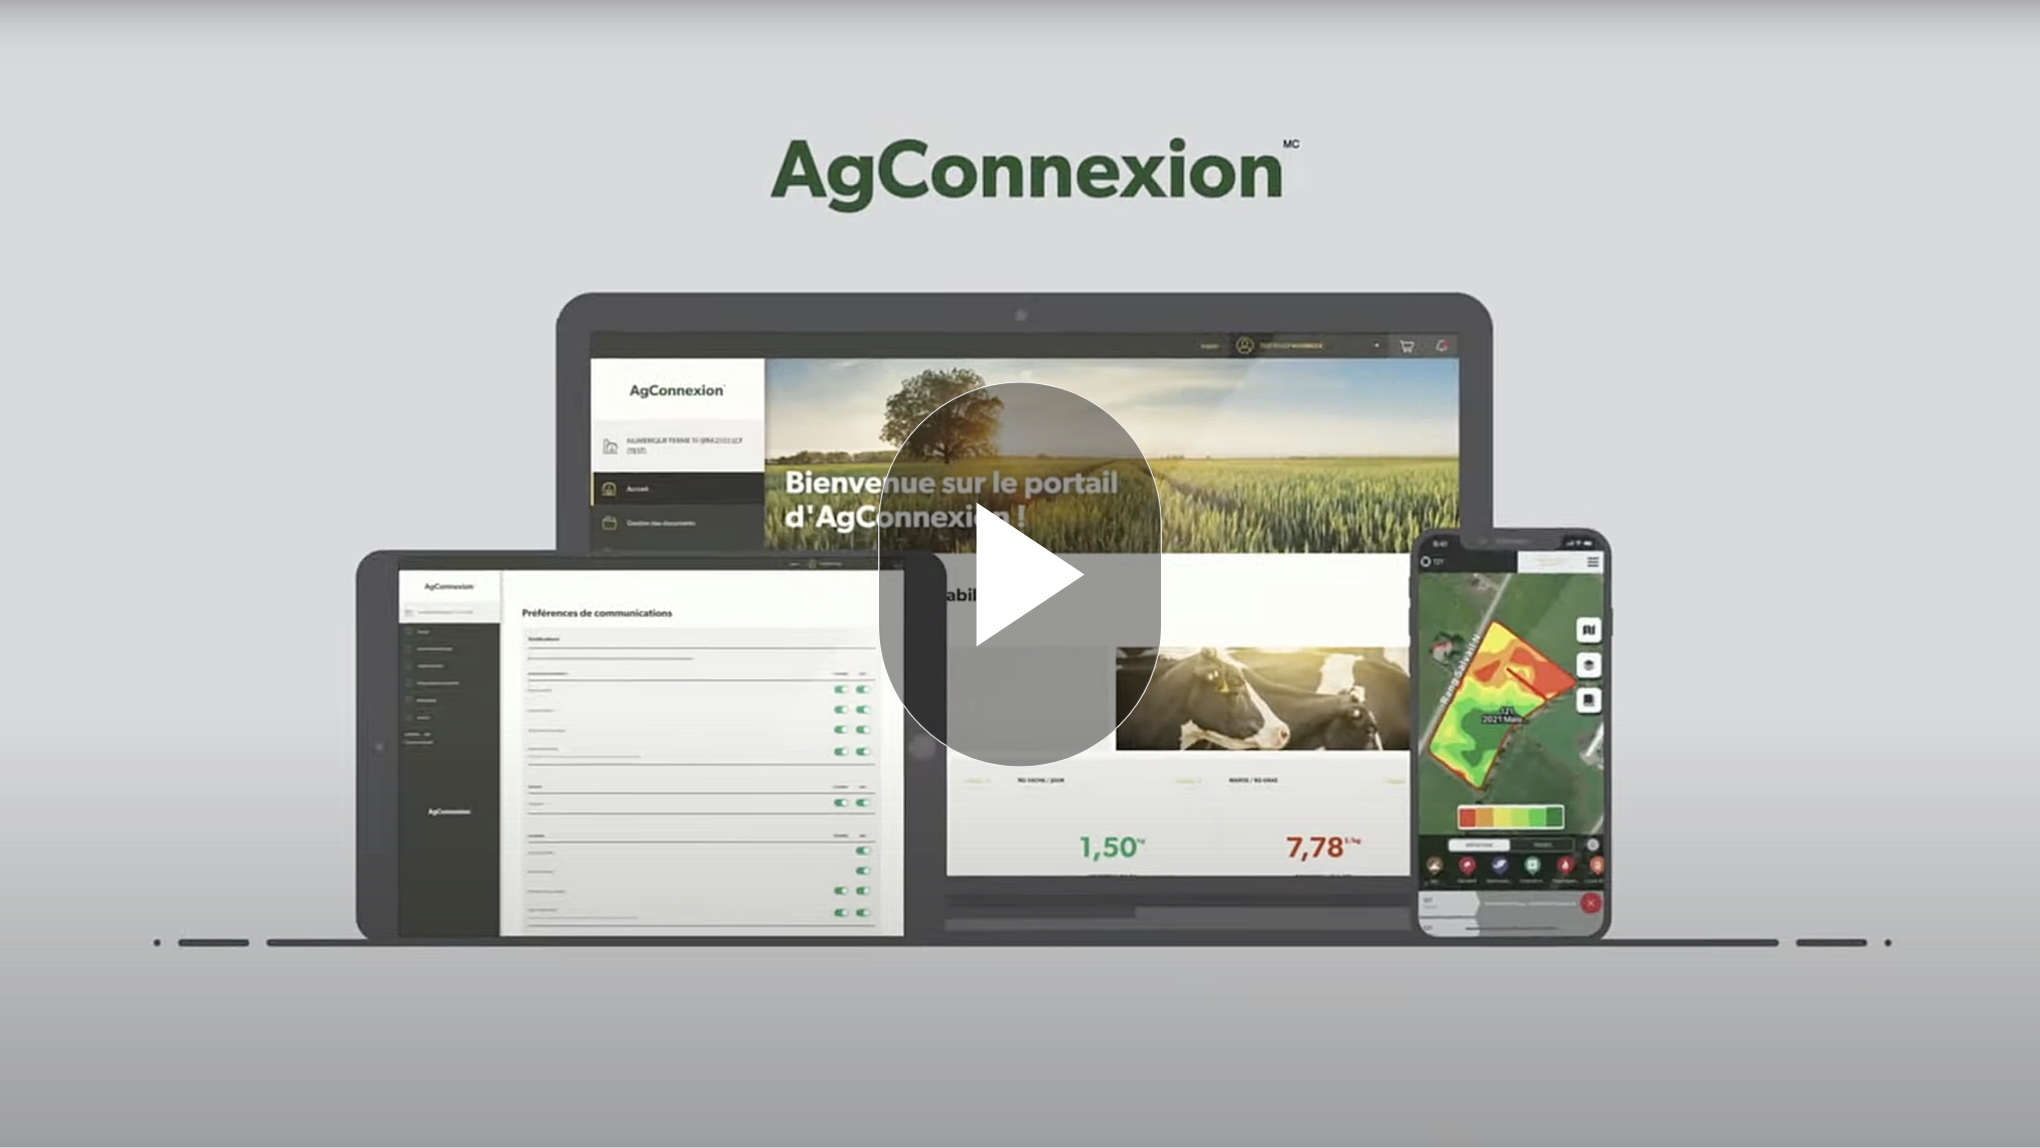 Vignette du vidéo de présentation d'AgConnexion avec les différents appareils électroniques qu'il est possible d'utiliser pour consulter la plateforme.